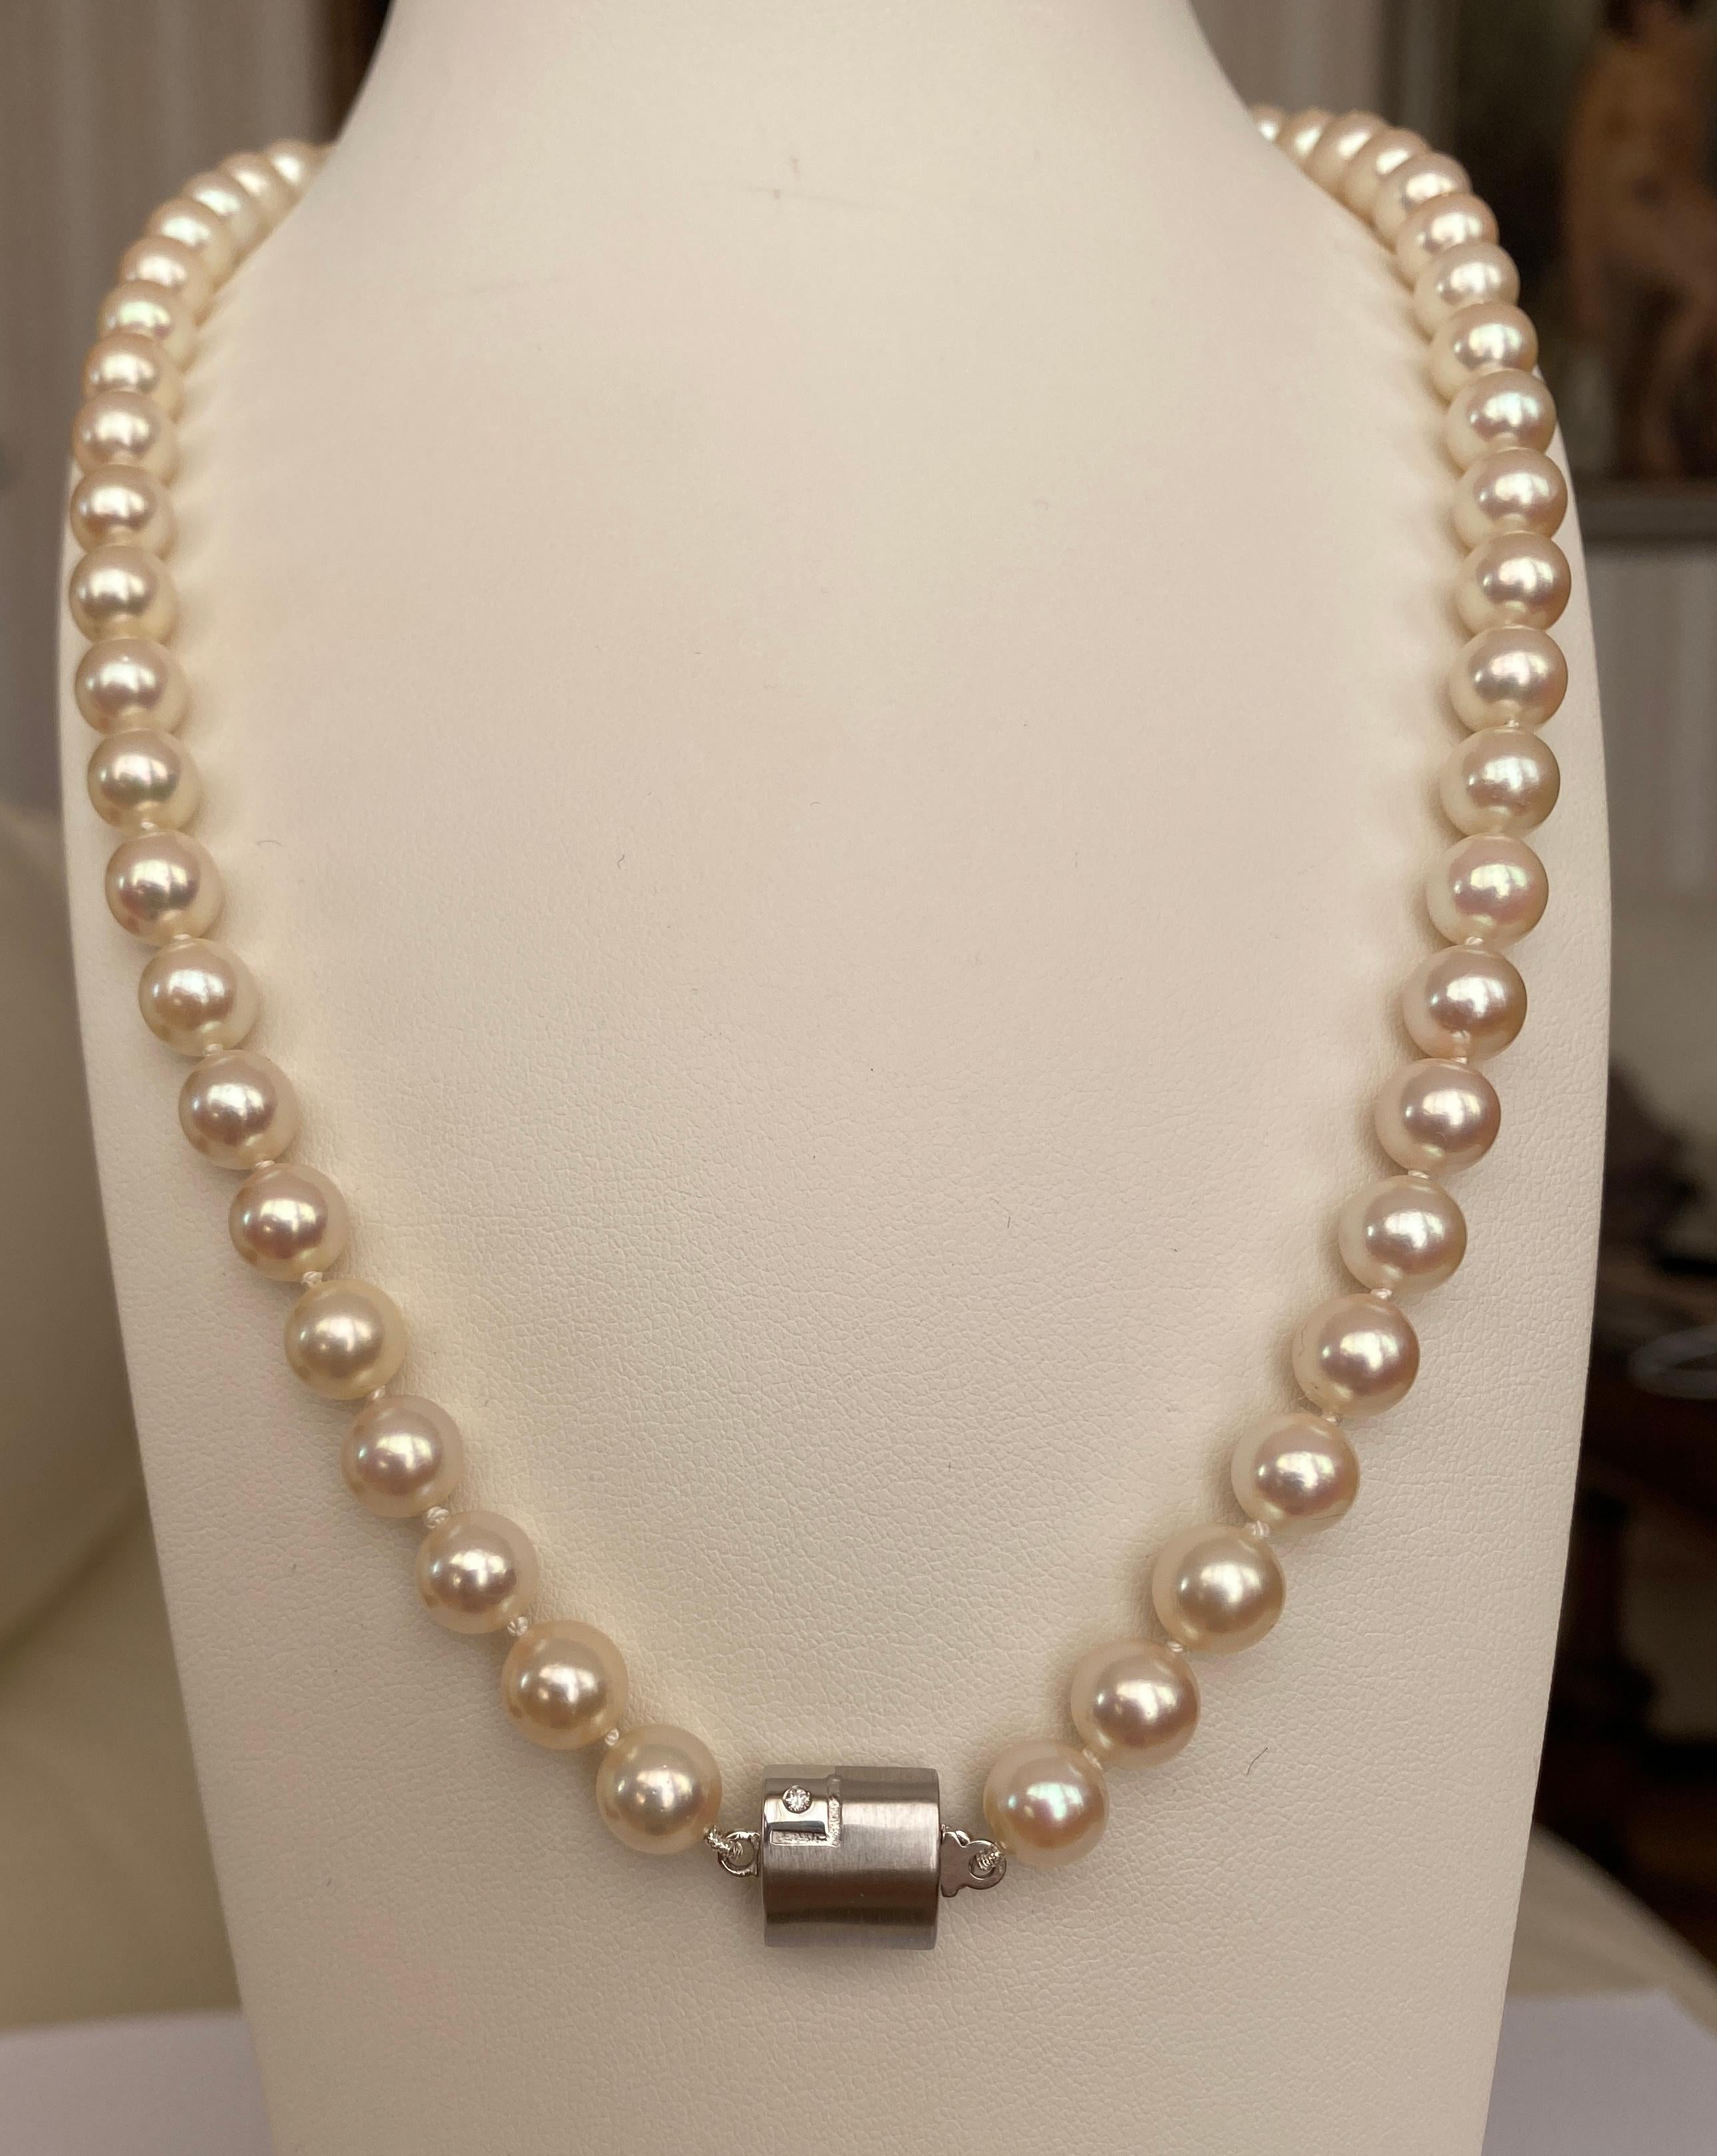 Se ofrece, collar de perlas Akoya con cierre de oro blanco de 18 kt, marcado con JKA y 750.
Las perlas Akoya son  56 piezas. Diámetro de las perlas redondas 7,50 mm. El cierre de oro está decorado con 1 diamante de aproximadamente 0,02 ct